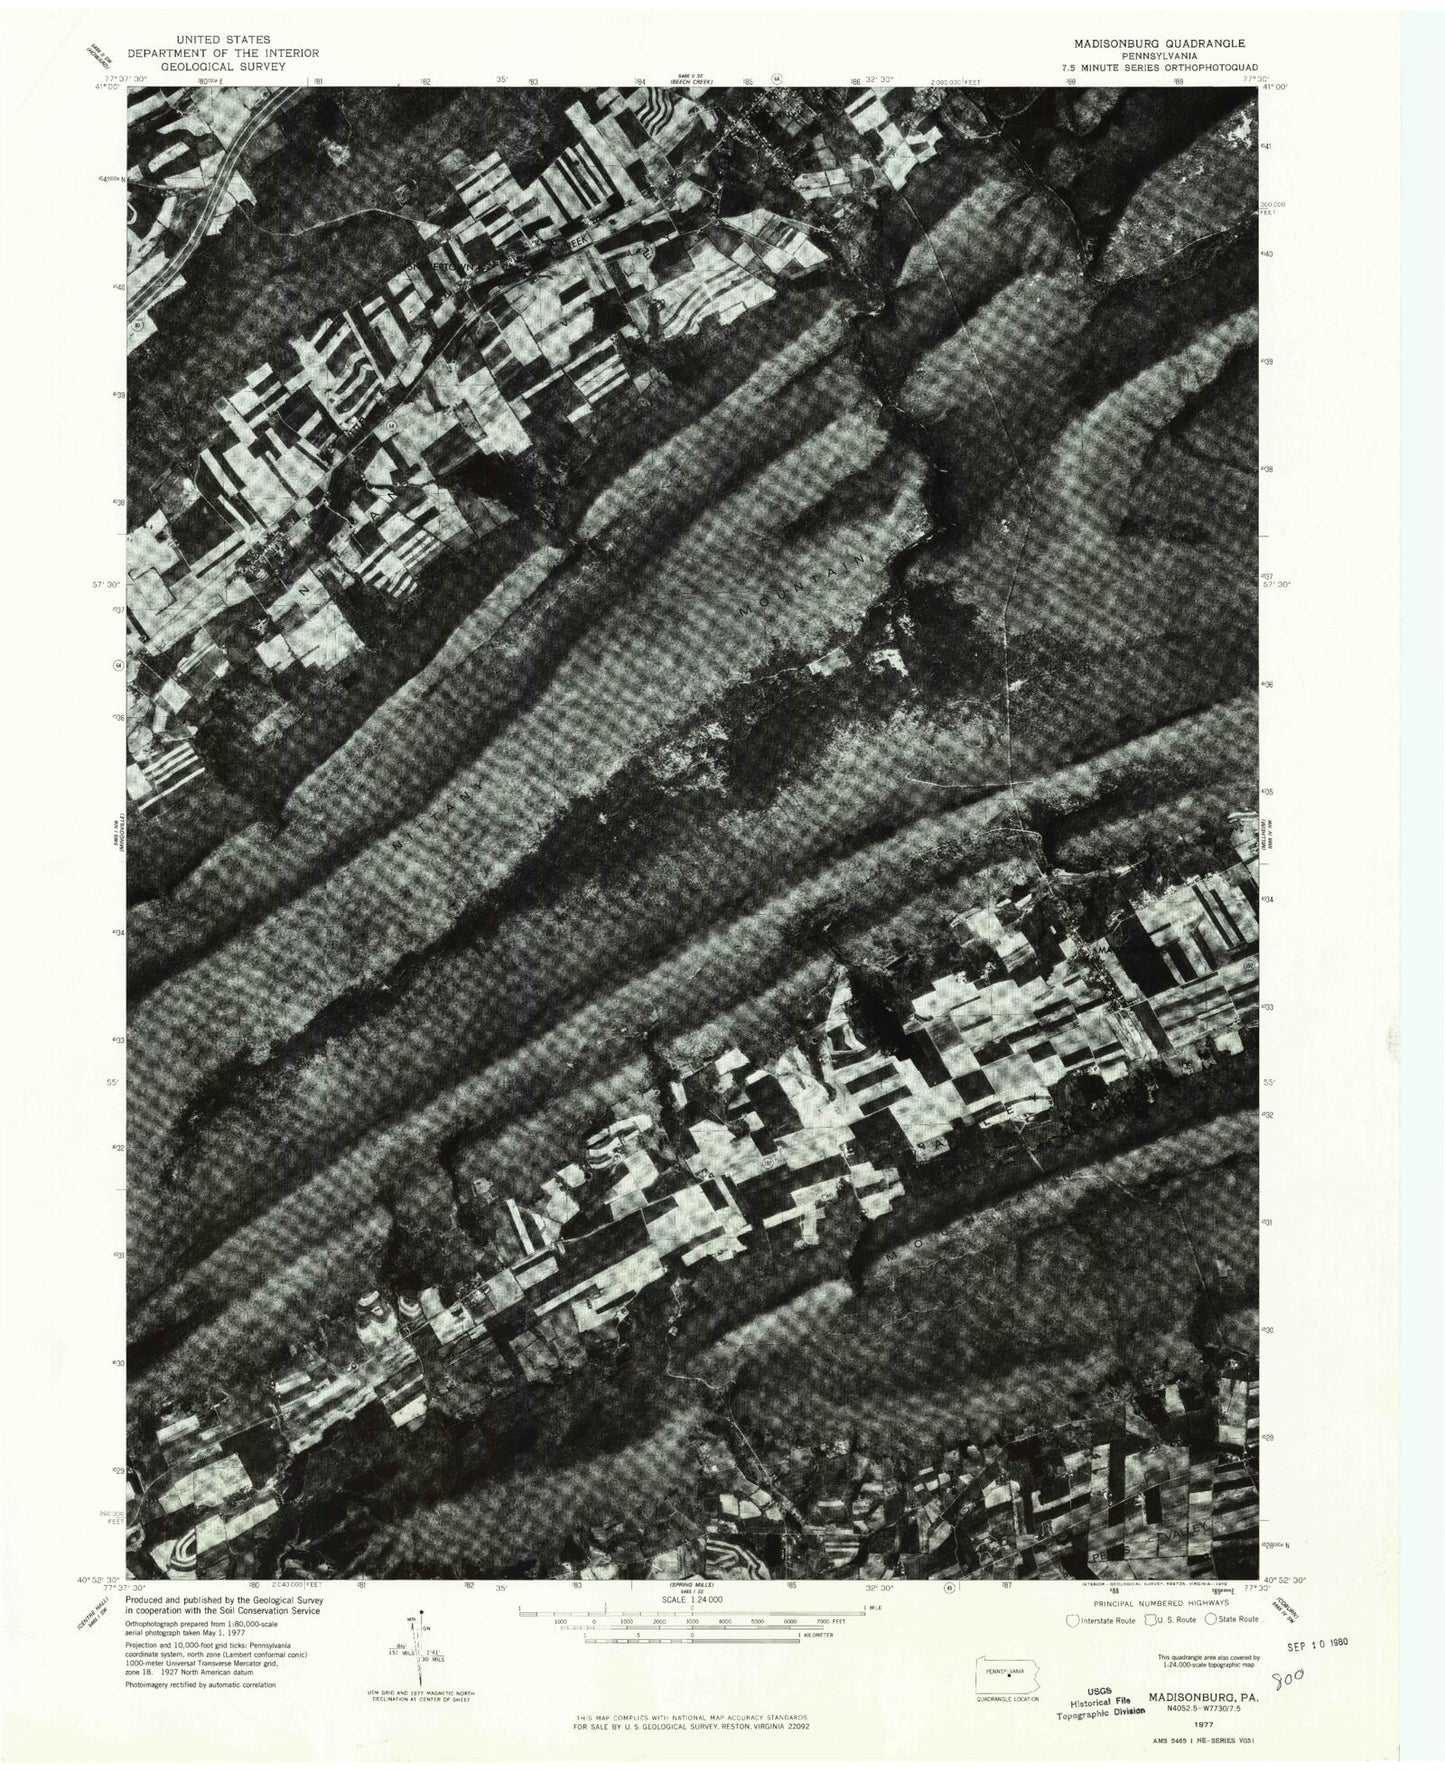 Classic USGS Madisonburg Pennsylvania 7.5'x7.5' Topo Map Image